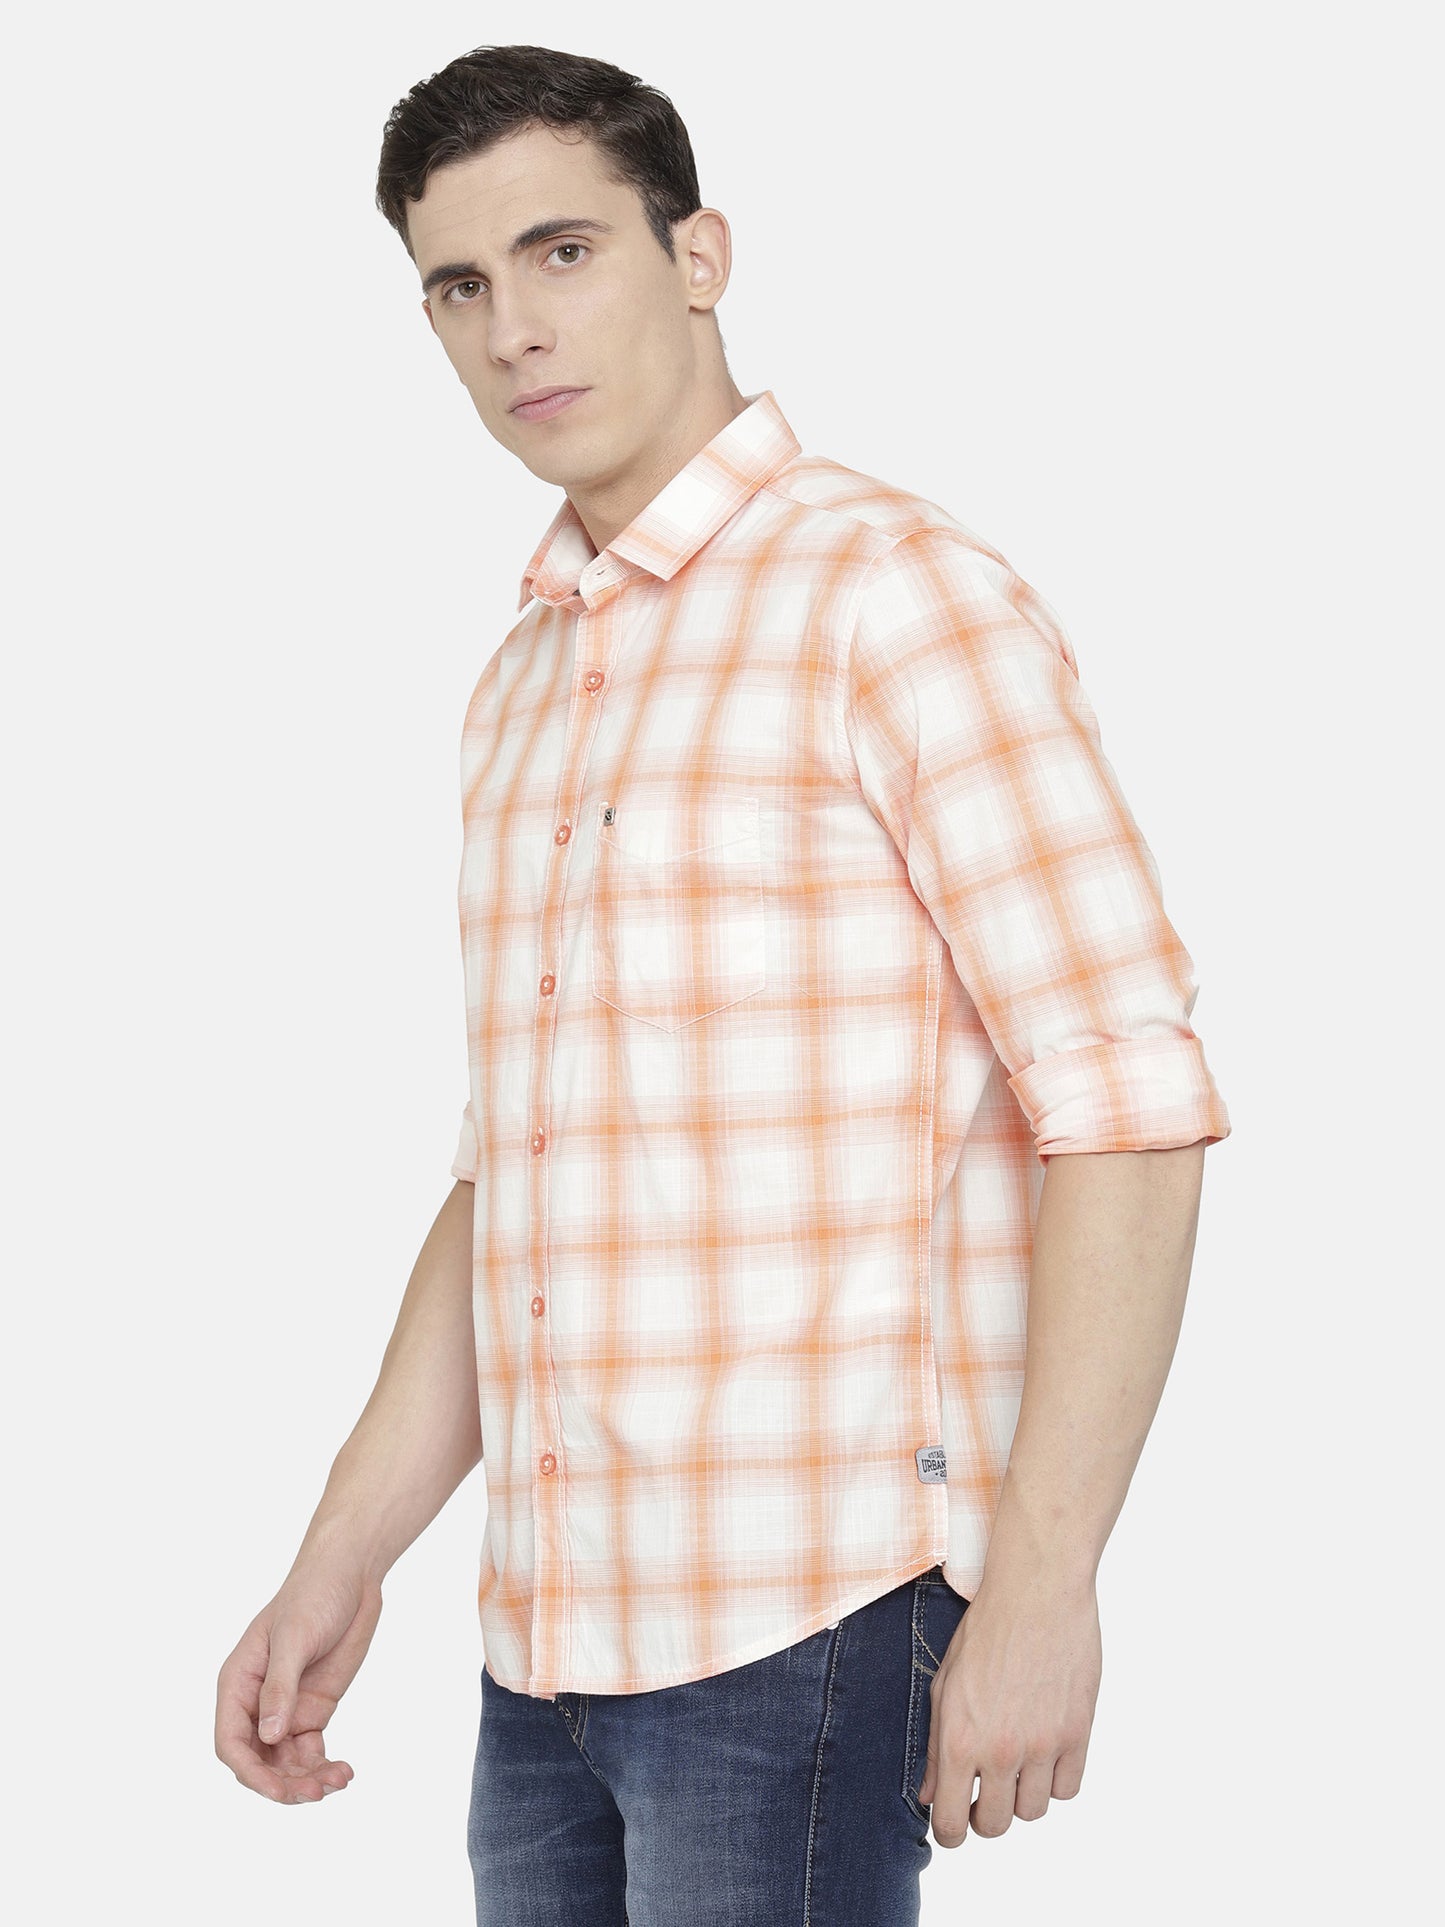 White and Orange Checkered Shirt